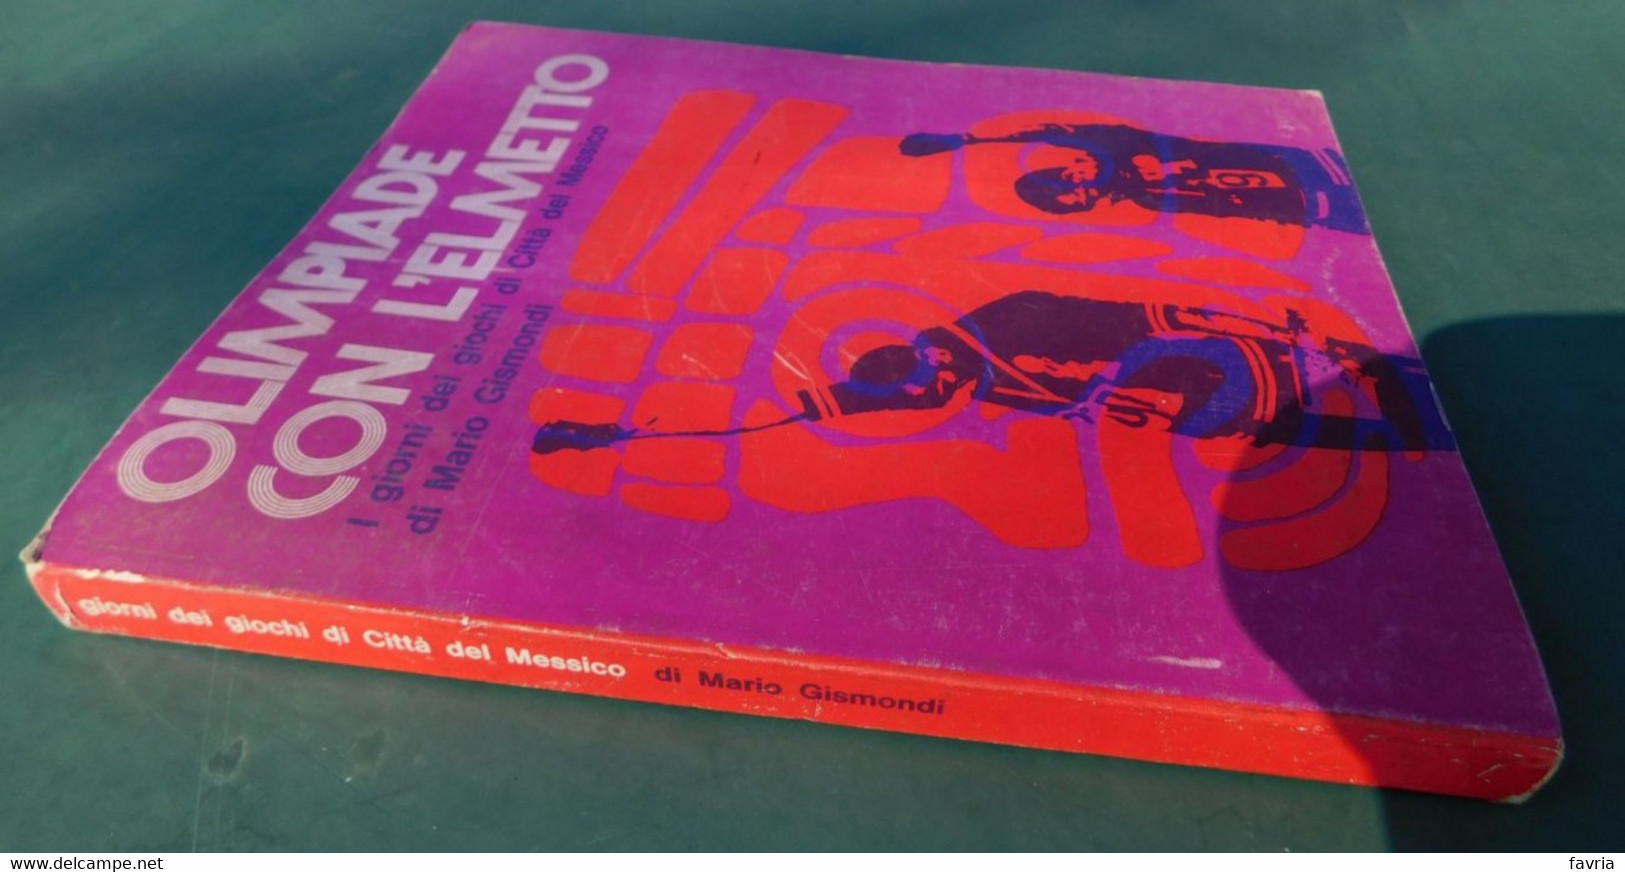 OLIMPIADE CON L'ELMETTO ( I Giorni Dei Giochi Di Città Del Messico) - Di Mario Gismondi - Ed. Gisca,1969 - Livres